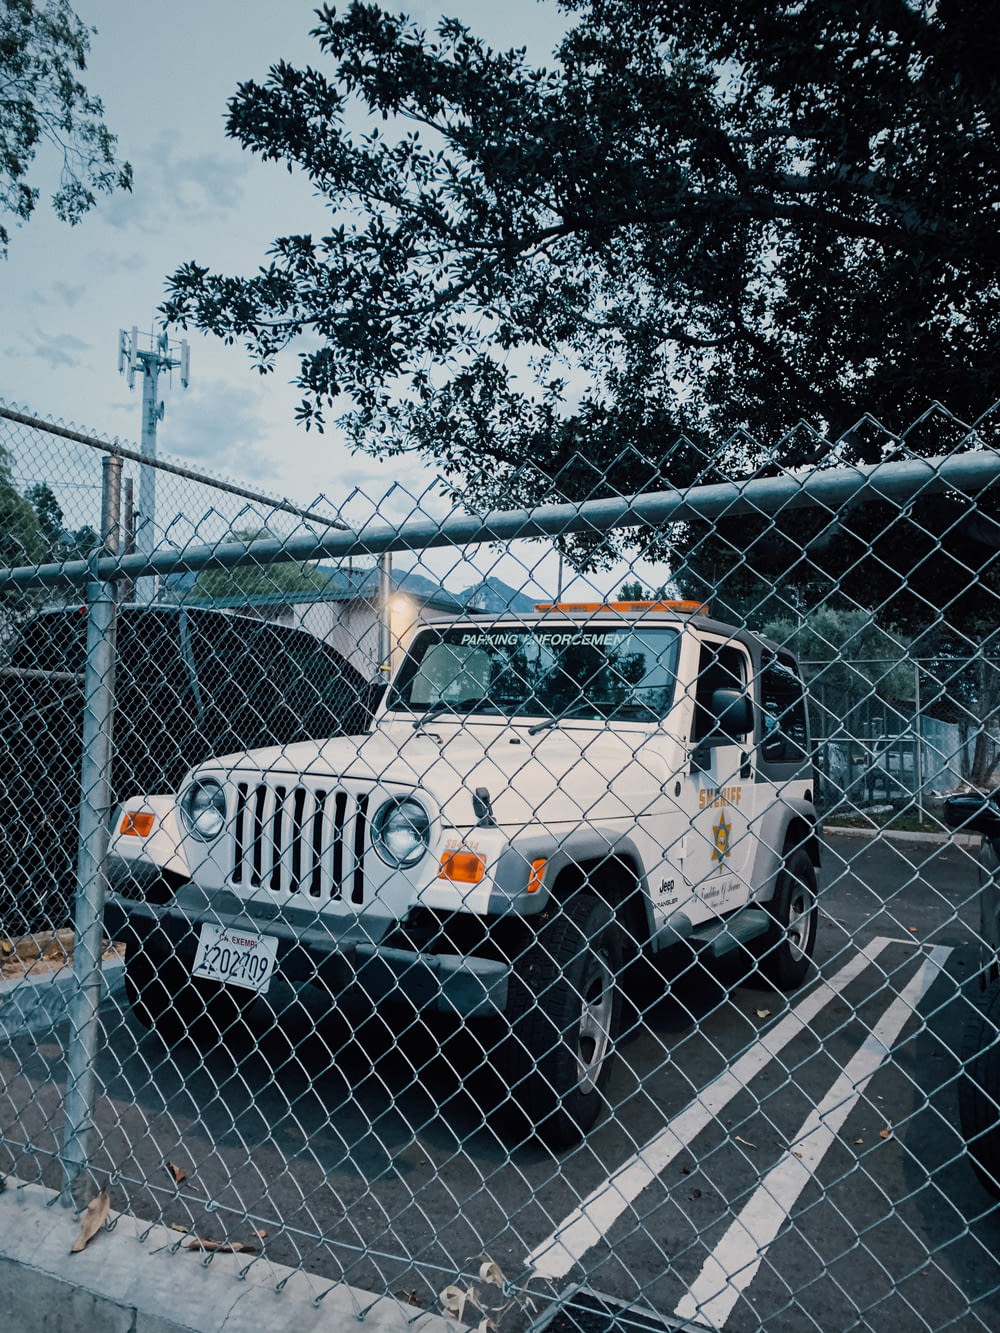 Jeep Wrangler bianca e nera parcheggiata accanto alla recinzione metallica grigia